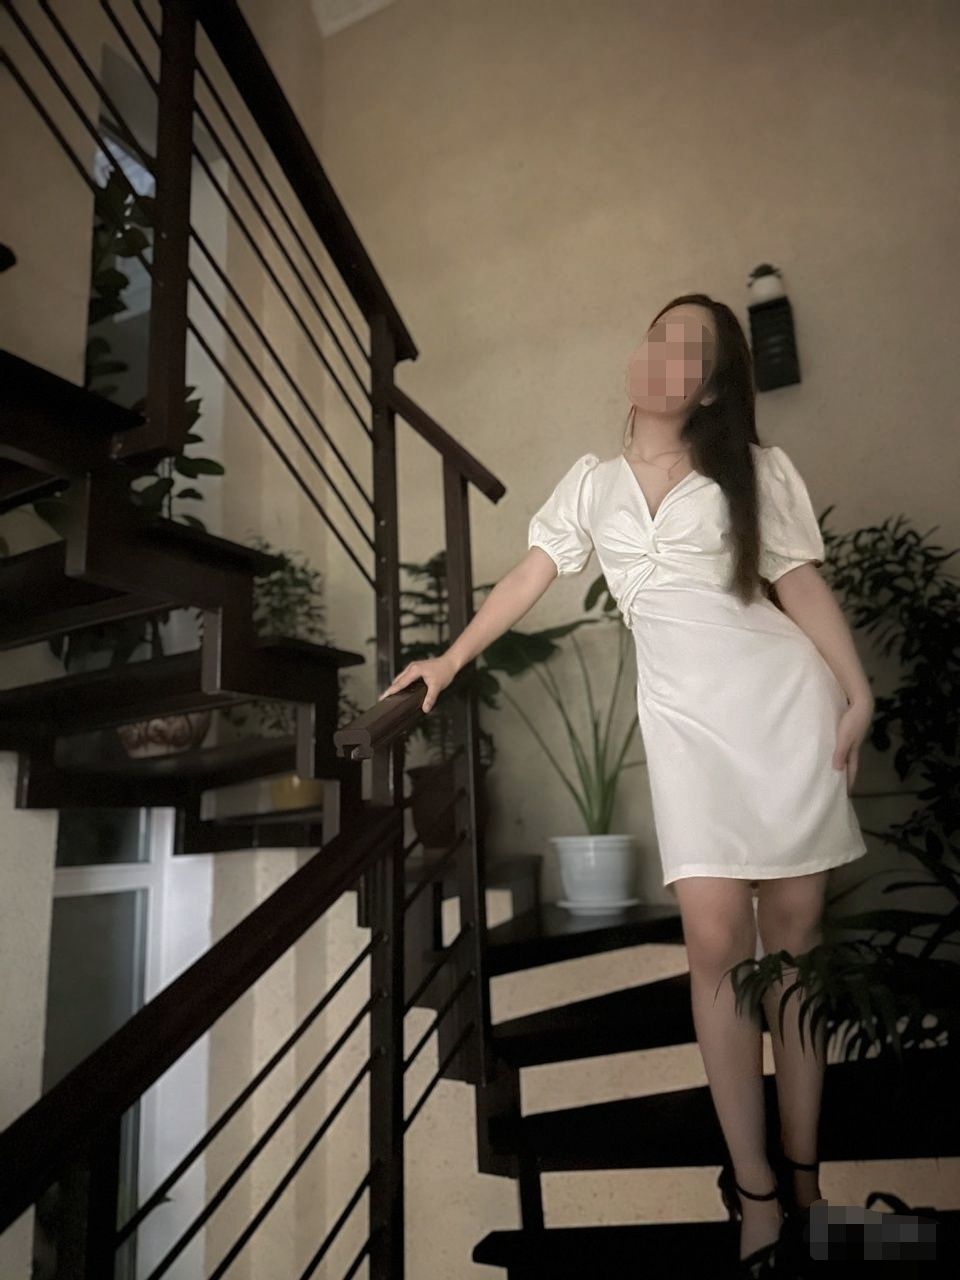 Летнее белое платье